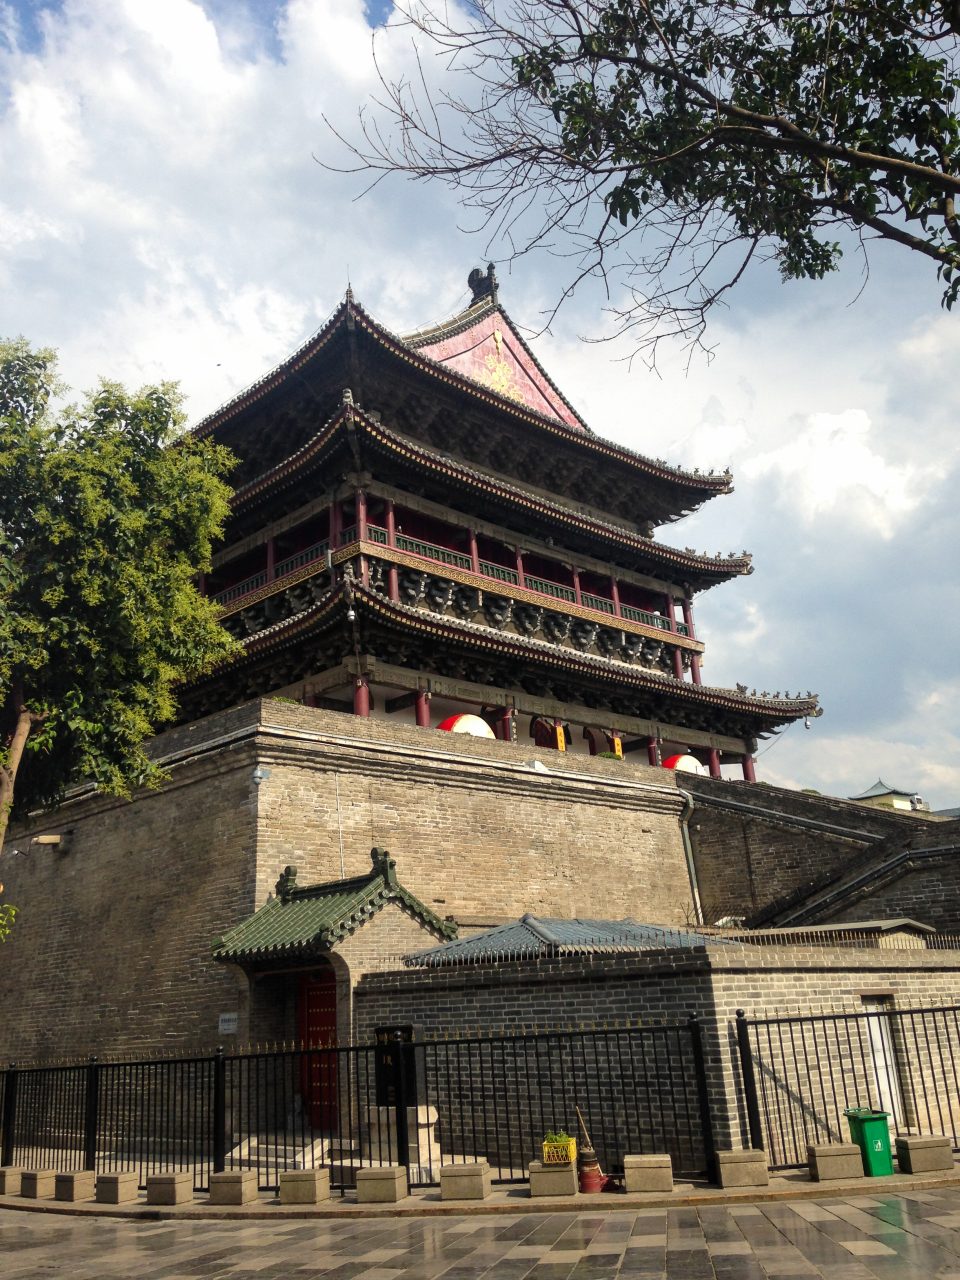 China-XiAn-Walled-City-Shaanxi-Terracotta-Warriors-biangbiang